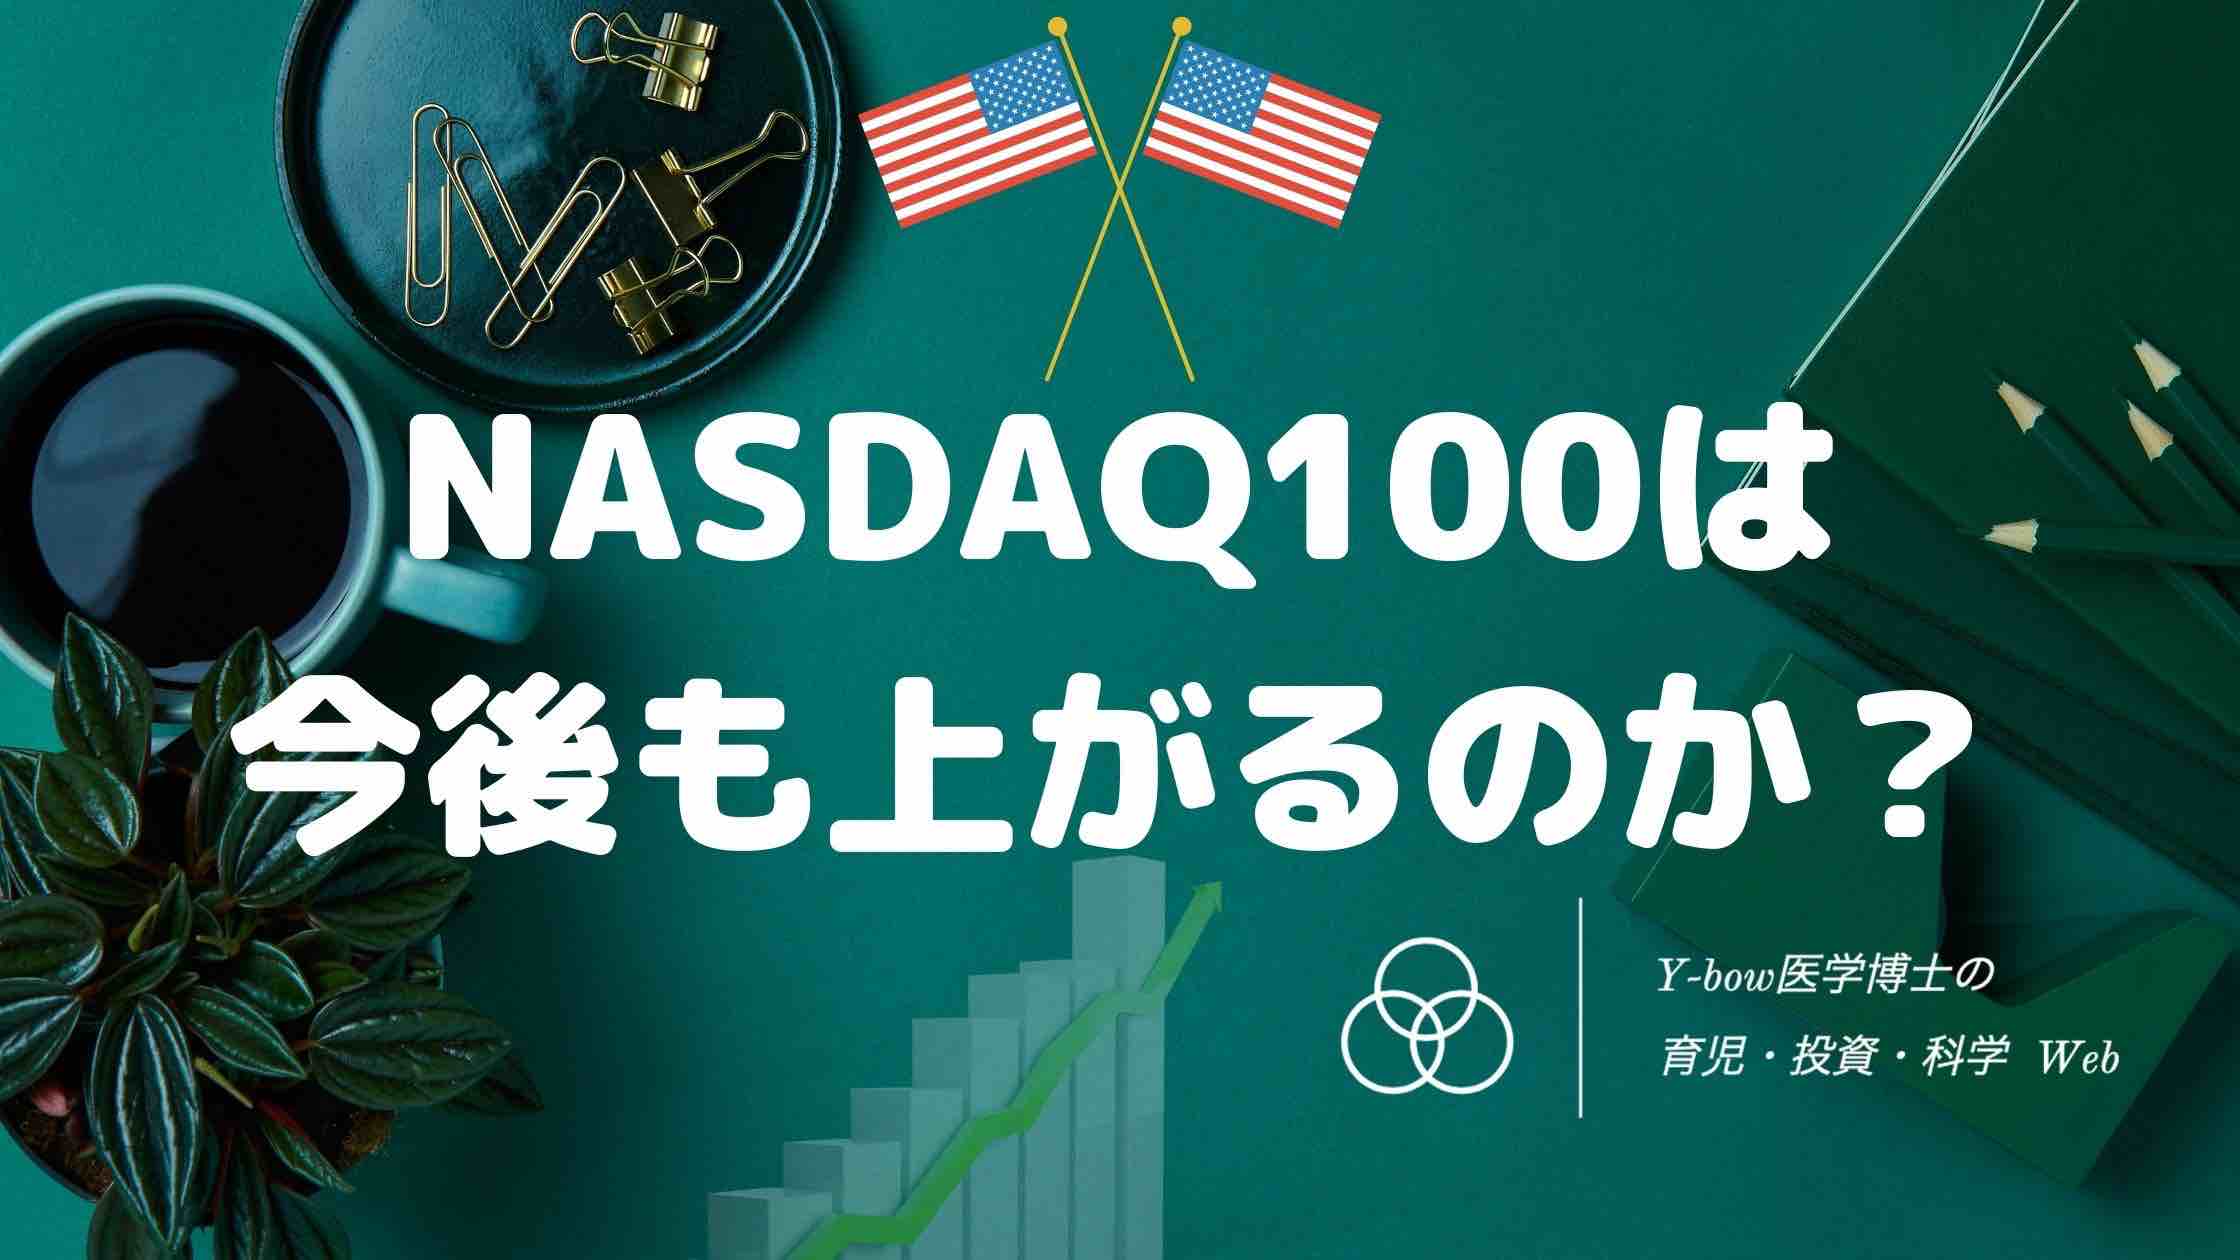 NASDAQ100はまだ上がる3つの根拠